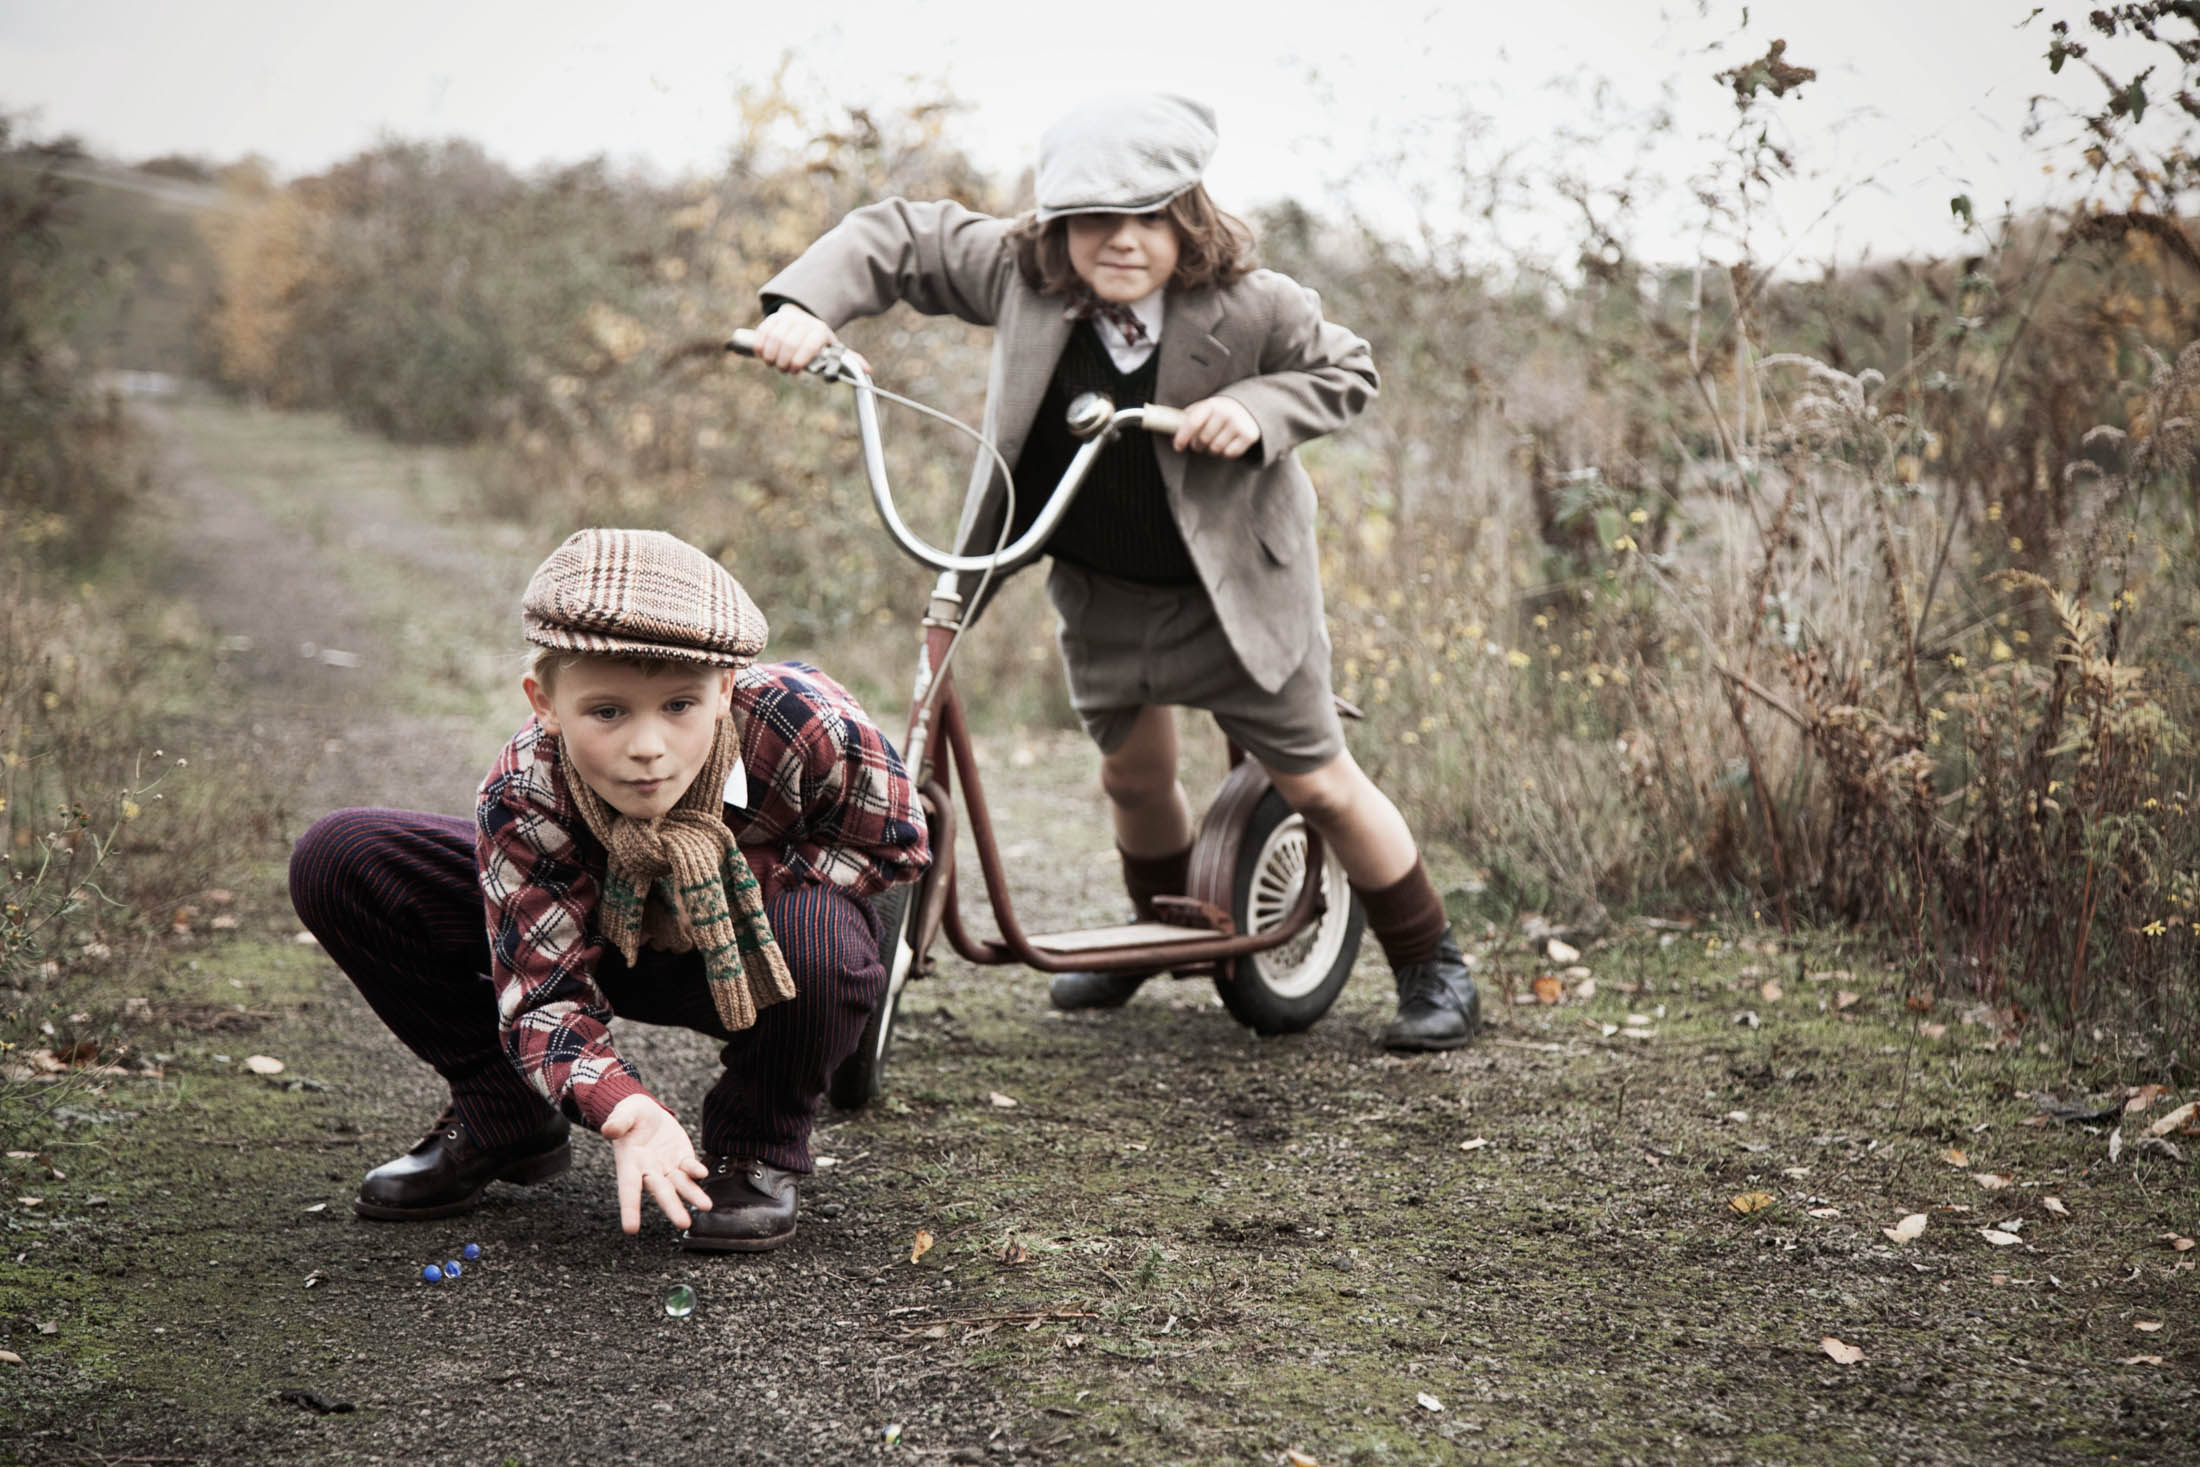 Zwei Kinder spielen im Freien; eines kniet und hebt Murmeln auf, während das andere mit einem Roller auf einem Feldweg steht. Beide tragen Vintage-Kleidung. © Fotografie Tomas Rodriguez